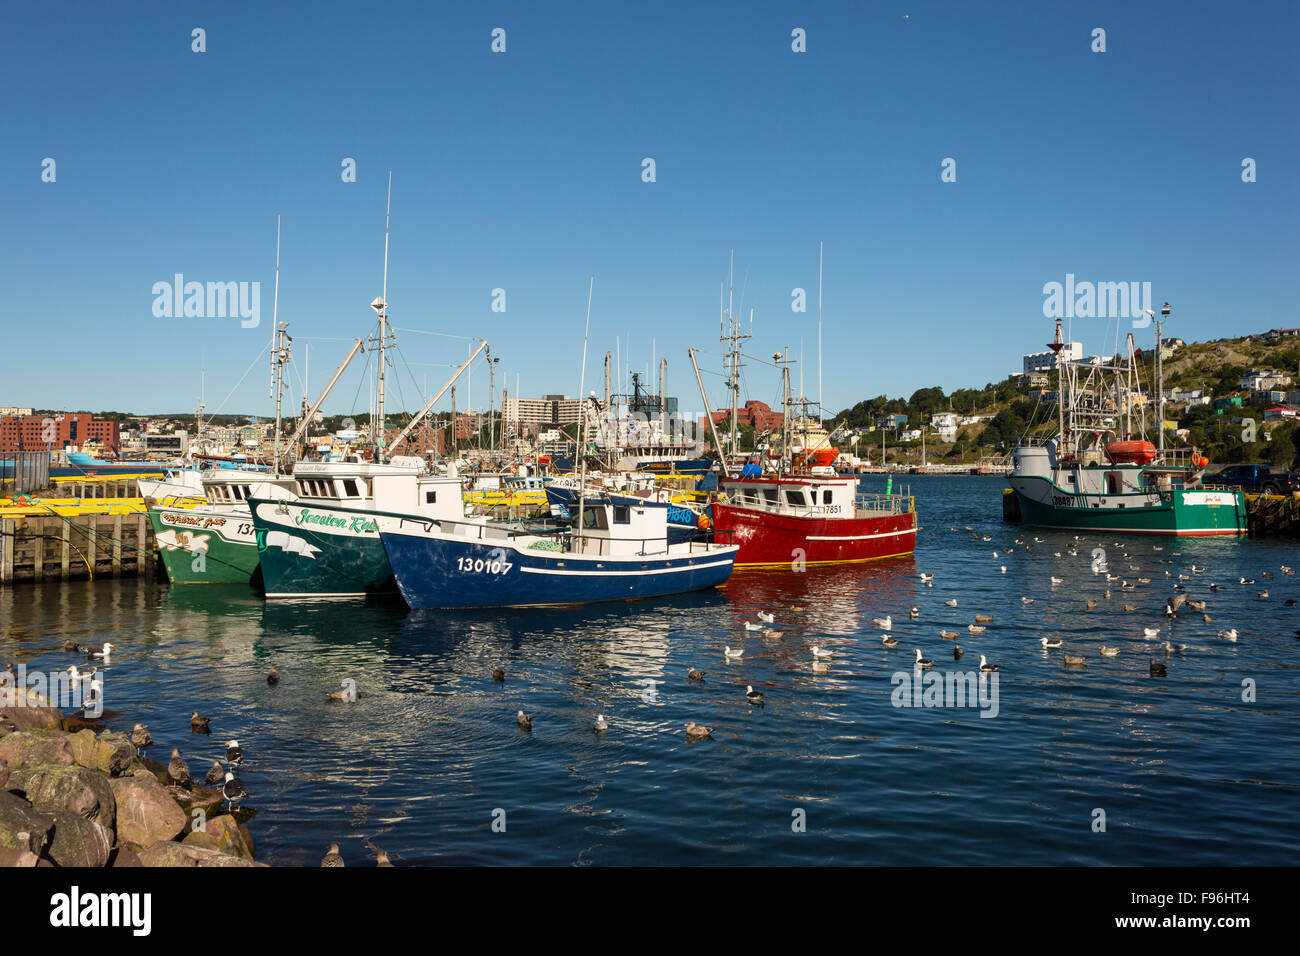 Fishing boats at wharf, St. John's, Newfoundland, Canada Stock Photo